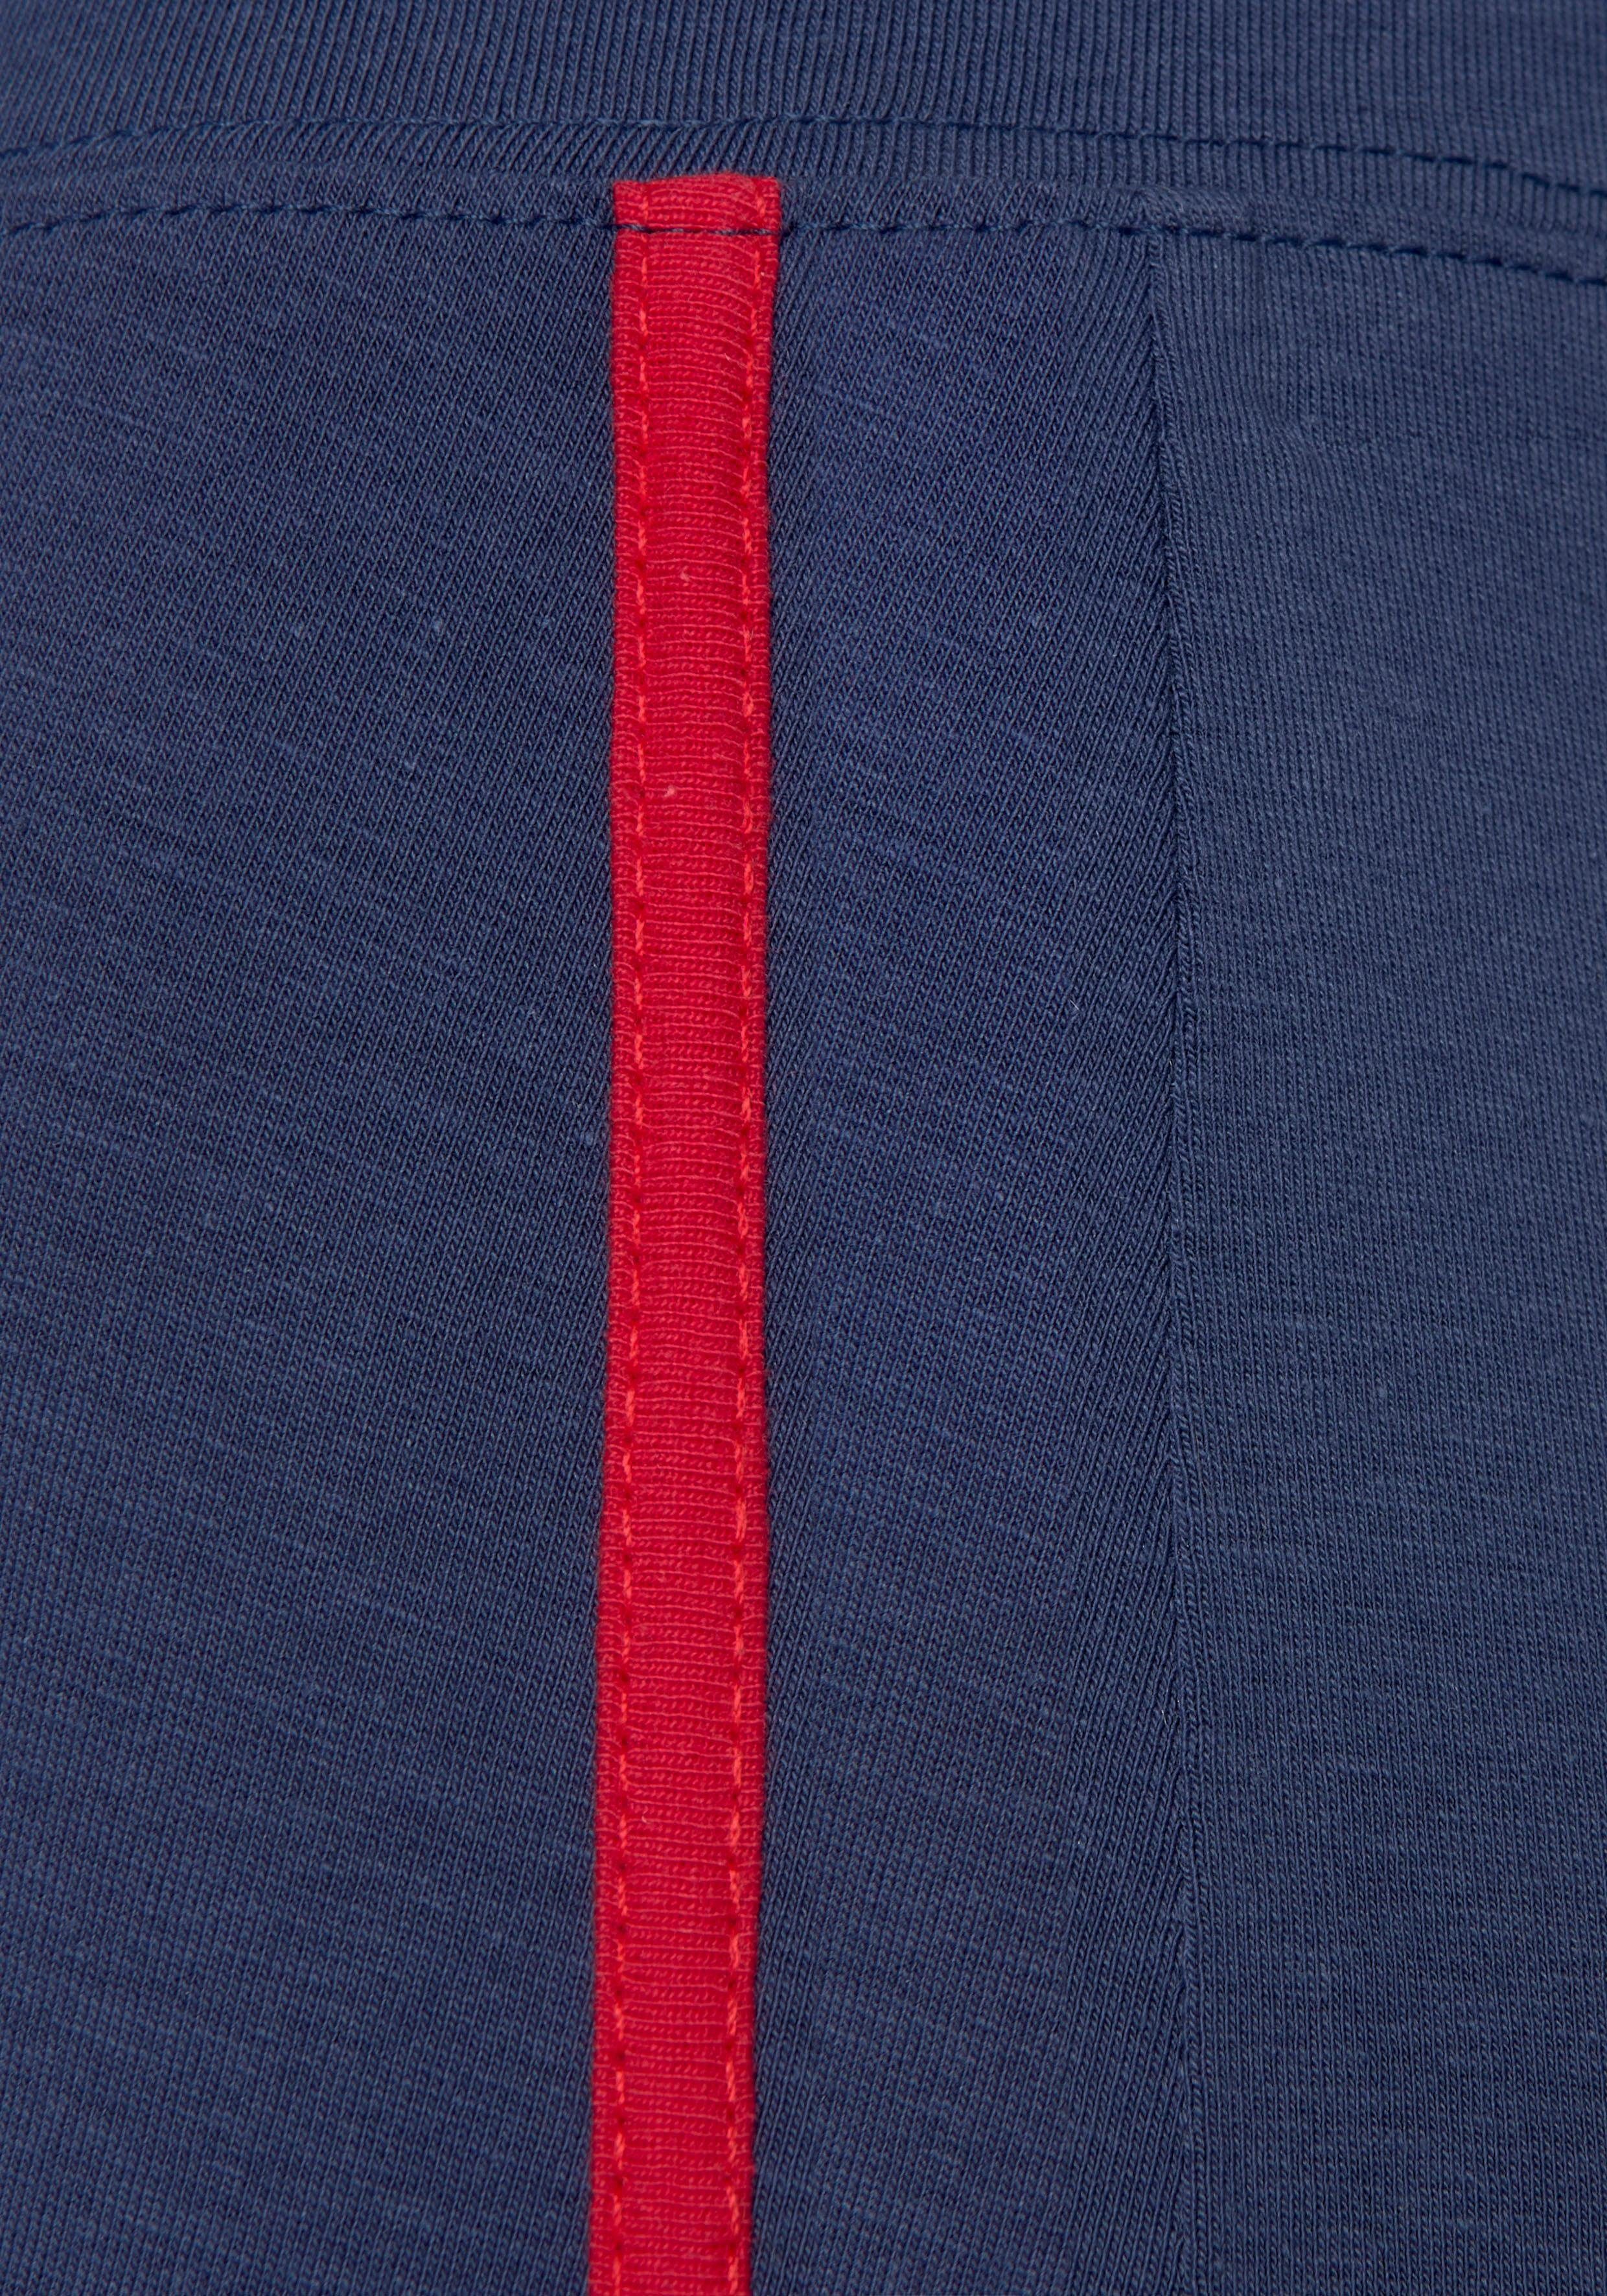 H.I.S Leggings Seitliche Streifeneinsätze in Kontrastfarben marine-navy-rot